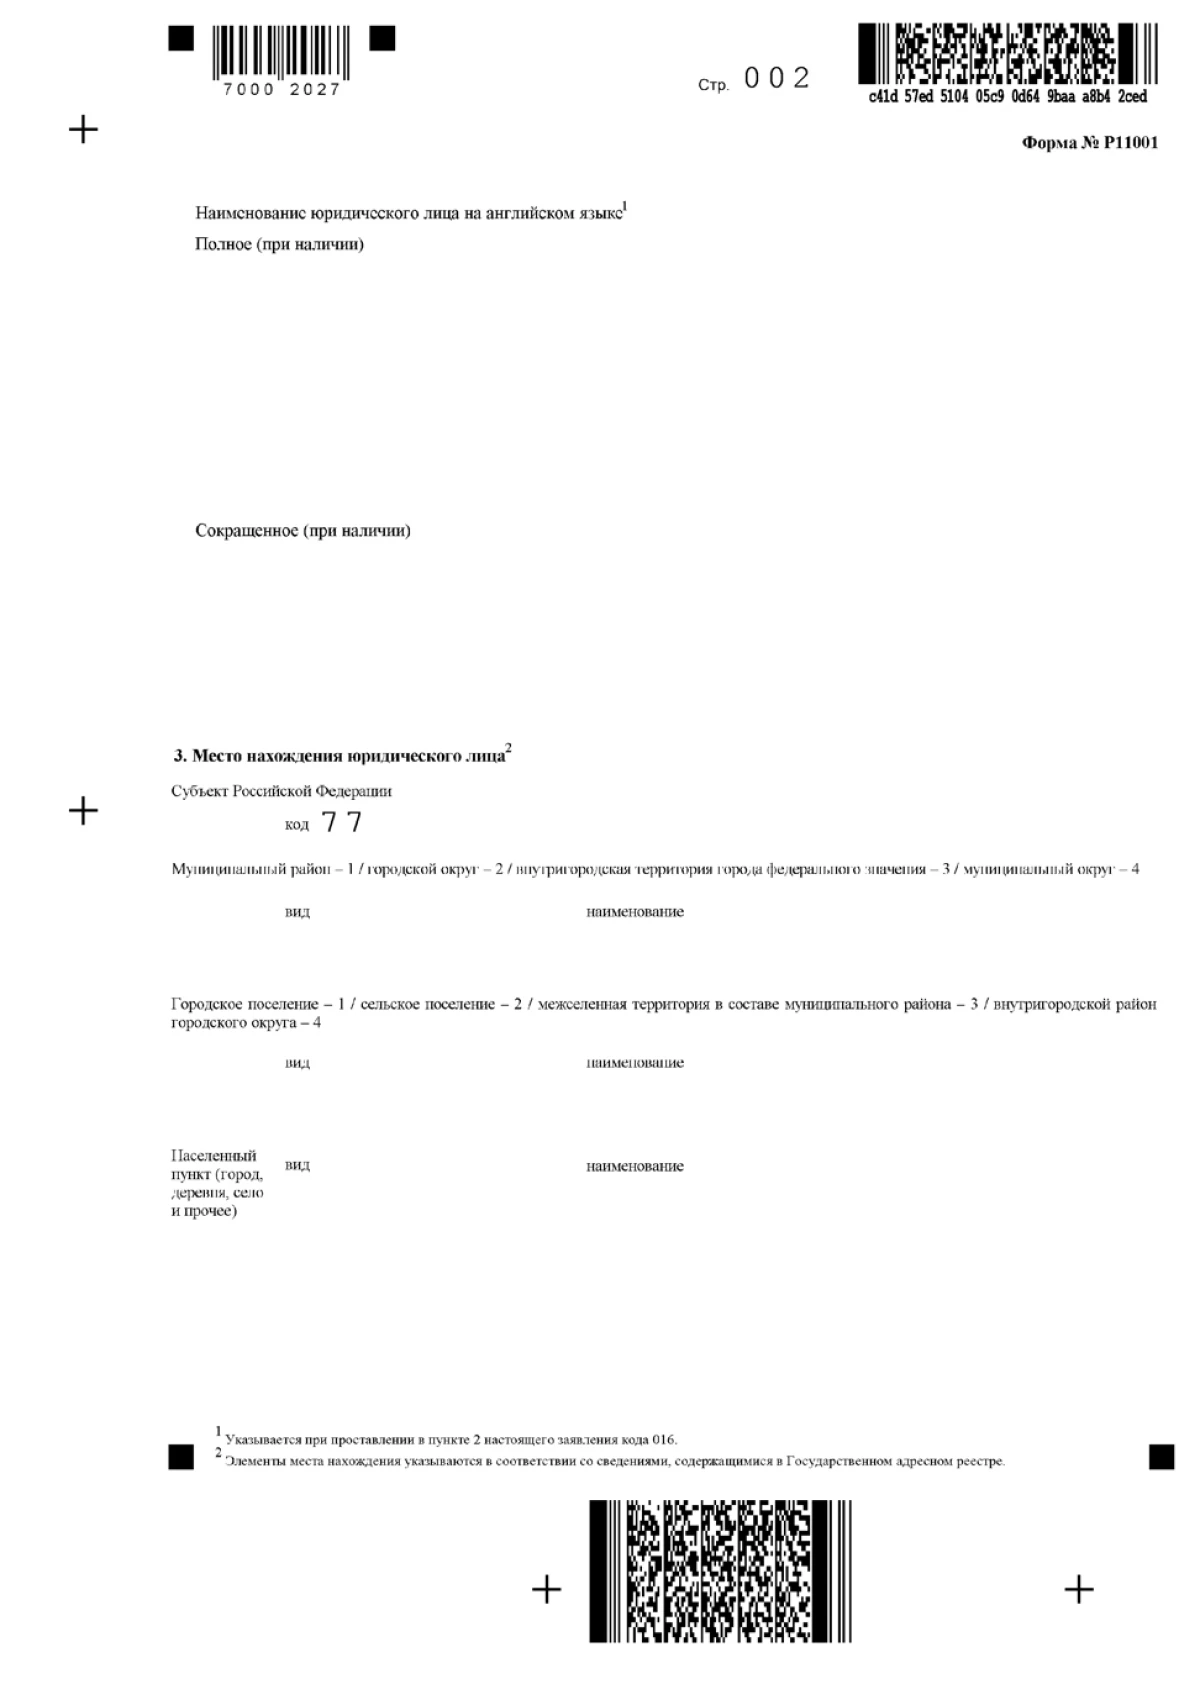 ကော်မာ၏စျေးနှုန်းအတွက်စီးပွားရေးလုပ်ငန်း - LLC ကိုမှတ်ပုံတင်ရန်စည်းမျဉ်းသစ်များ 13190_3